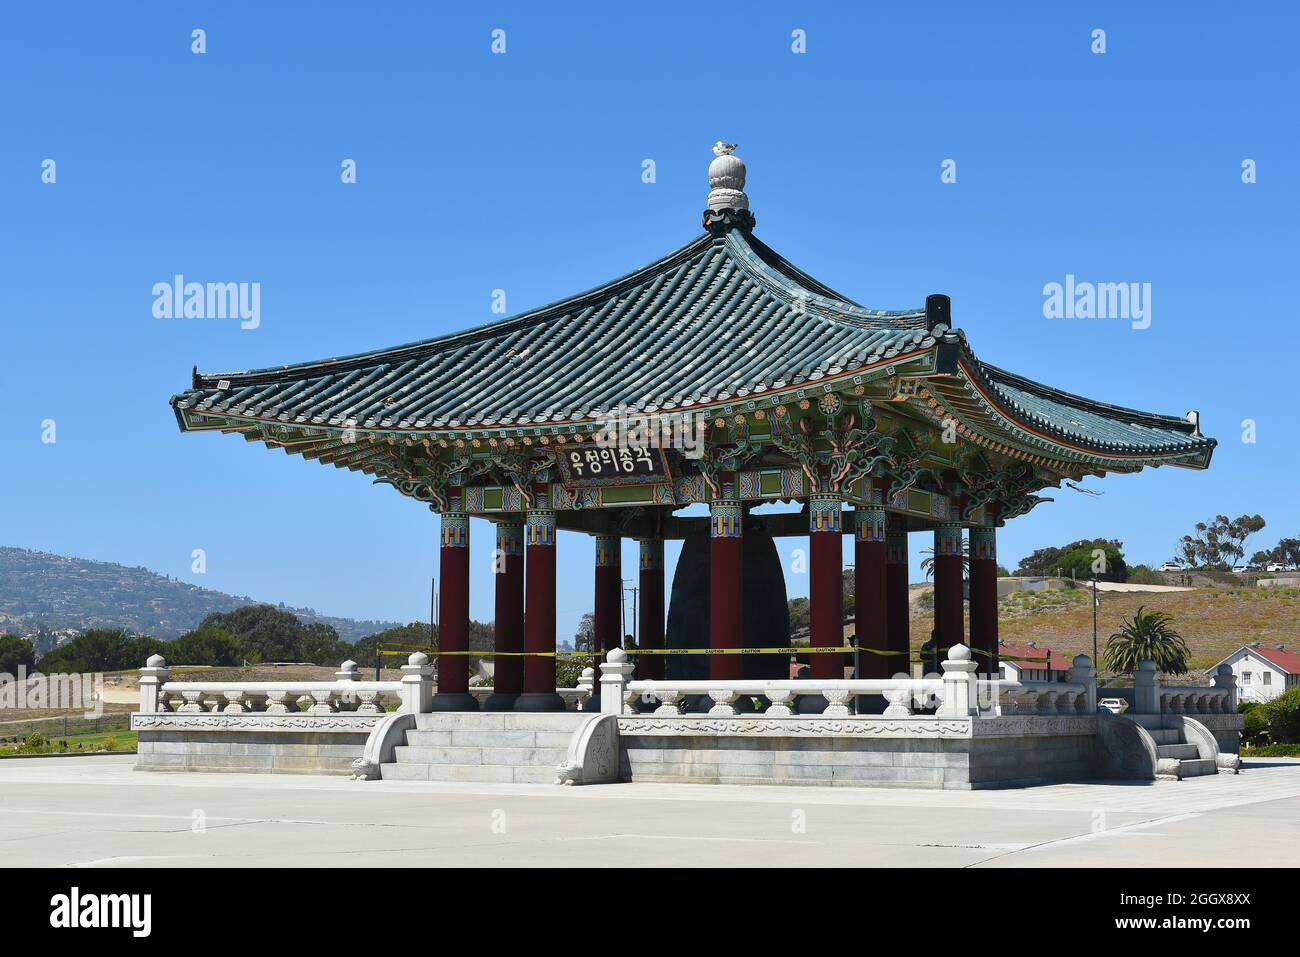 SAN PEDRO, KALIFORNIEN - 27. AUG 2021: Die historische koreanische Freundschaftsglocke im Angels Gate Park. Stockfoto